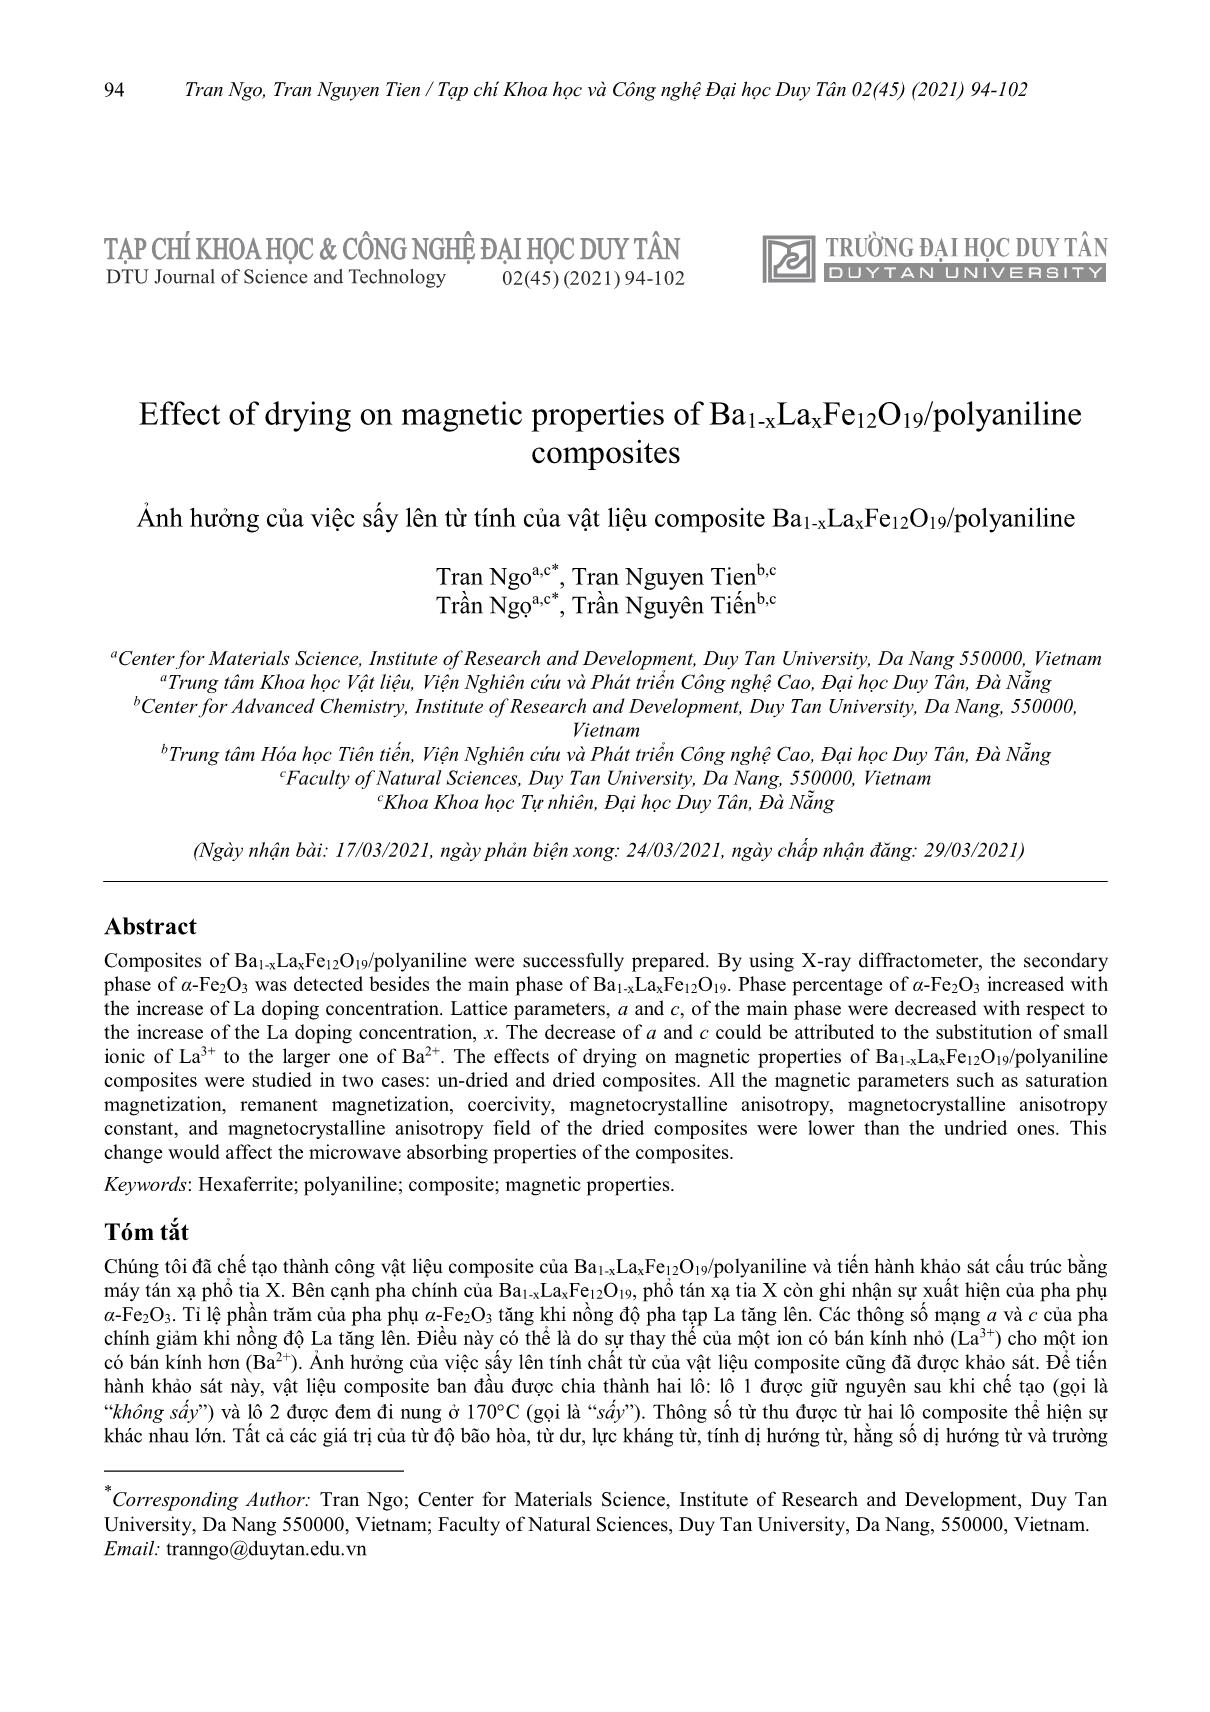 Ảnh hưởng của việc sấy lên từ tính của vật liệu composite Ba1-XLaxFe₁₂O₁₉/polyaniline trang 1